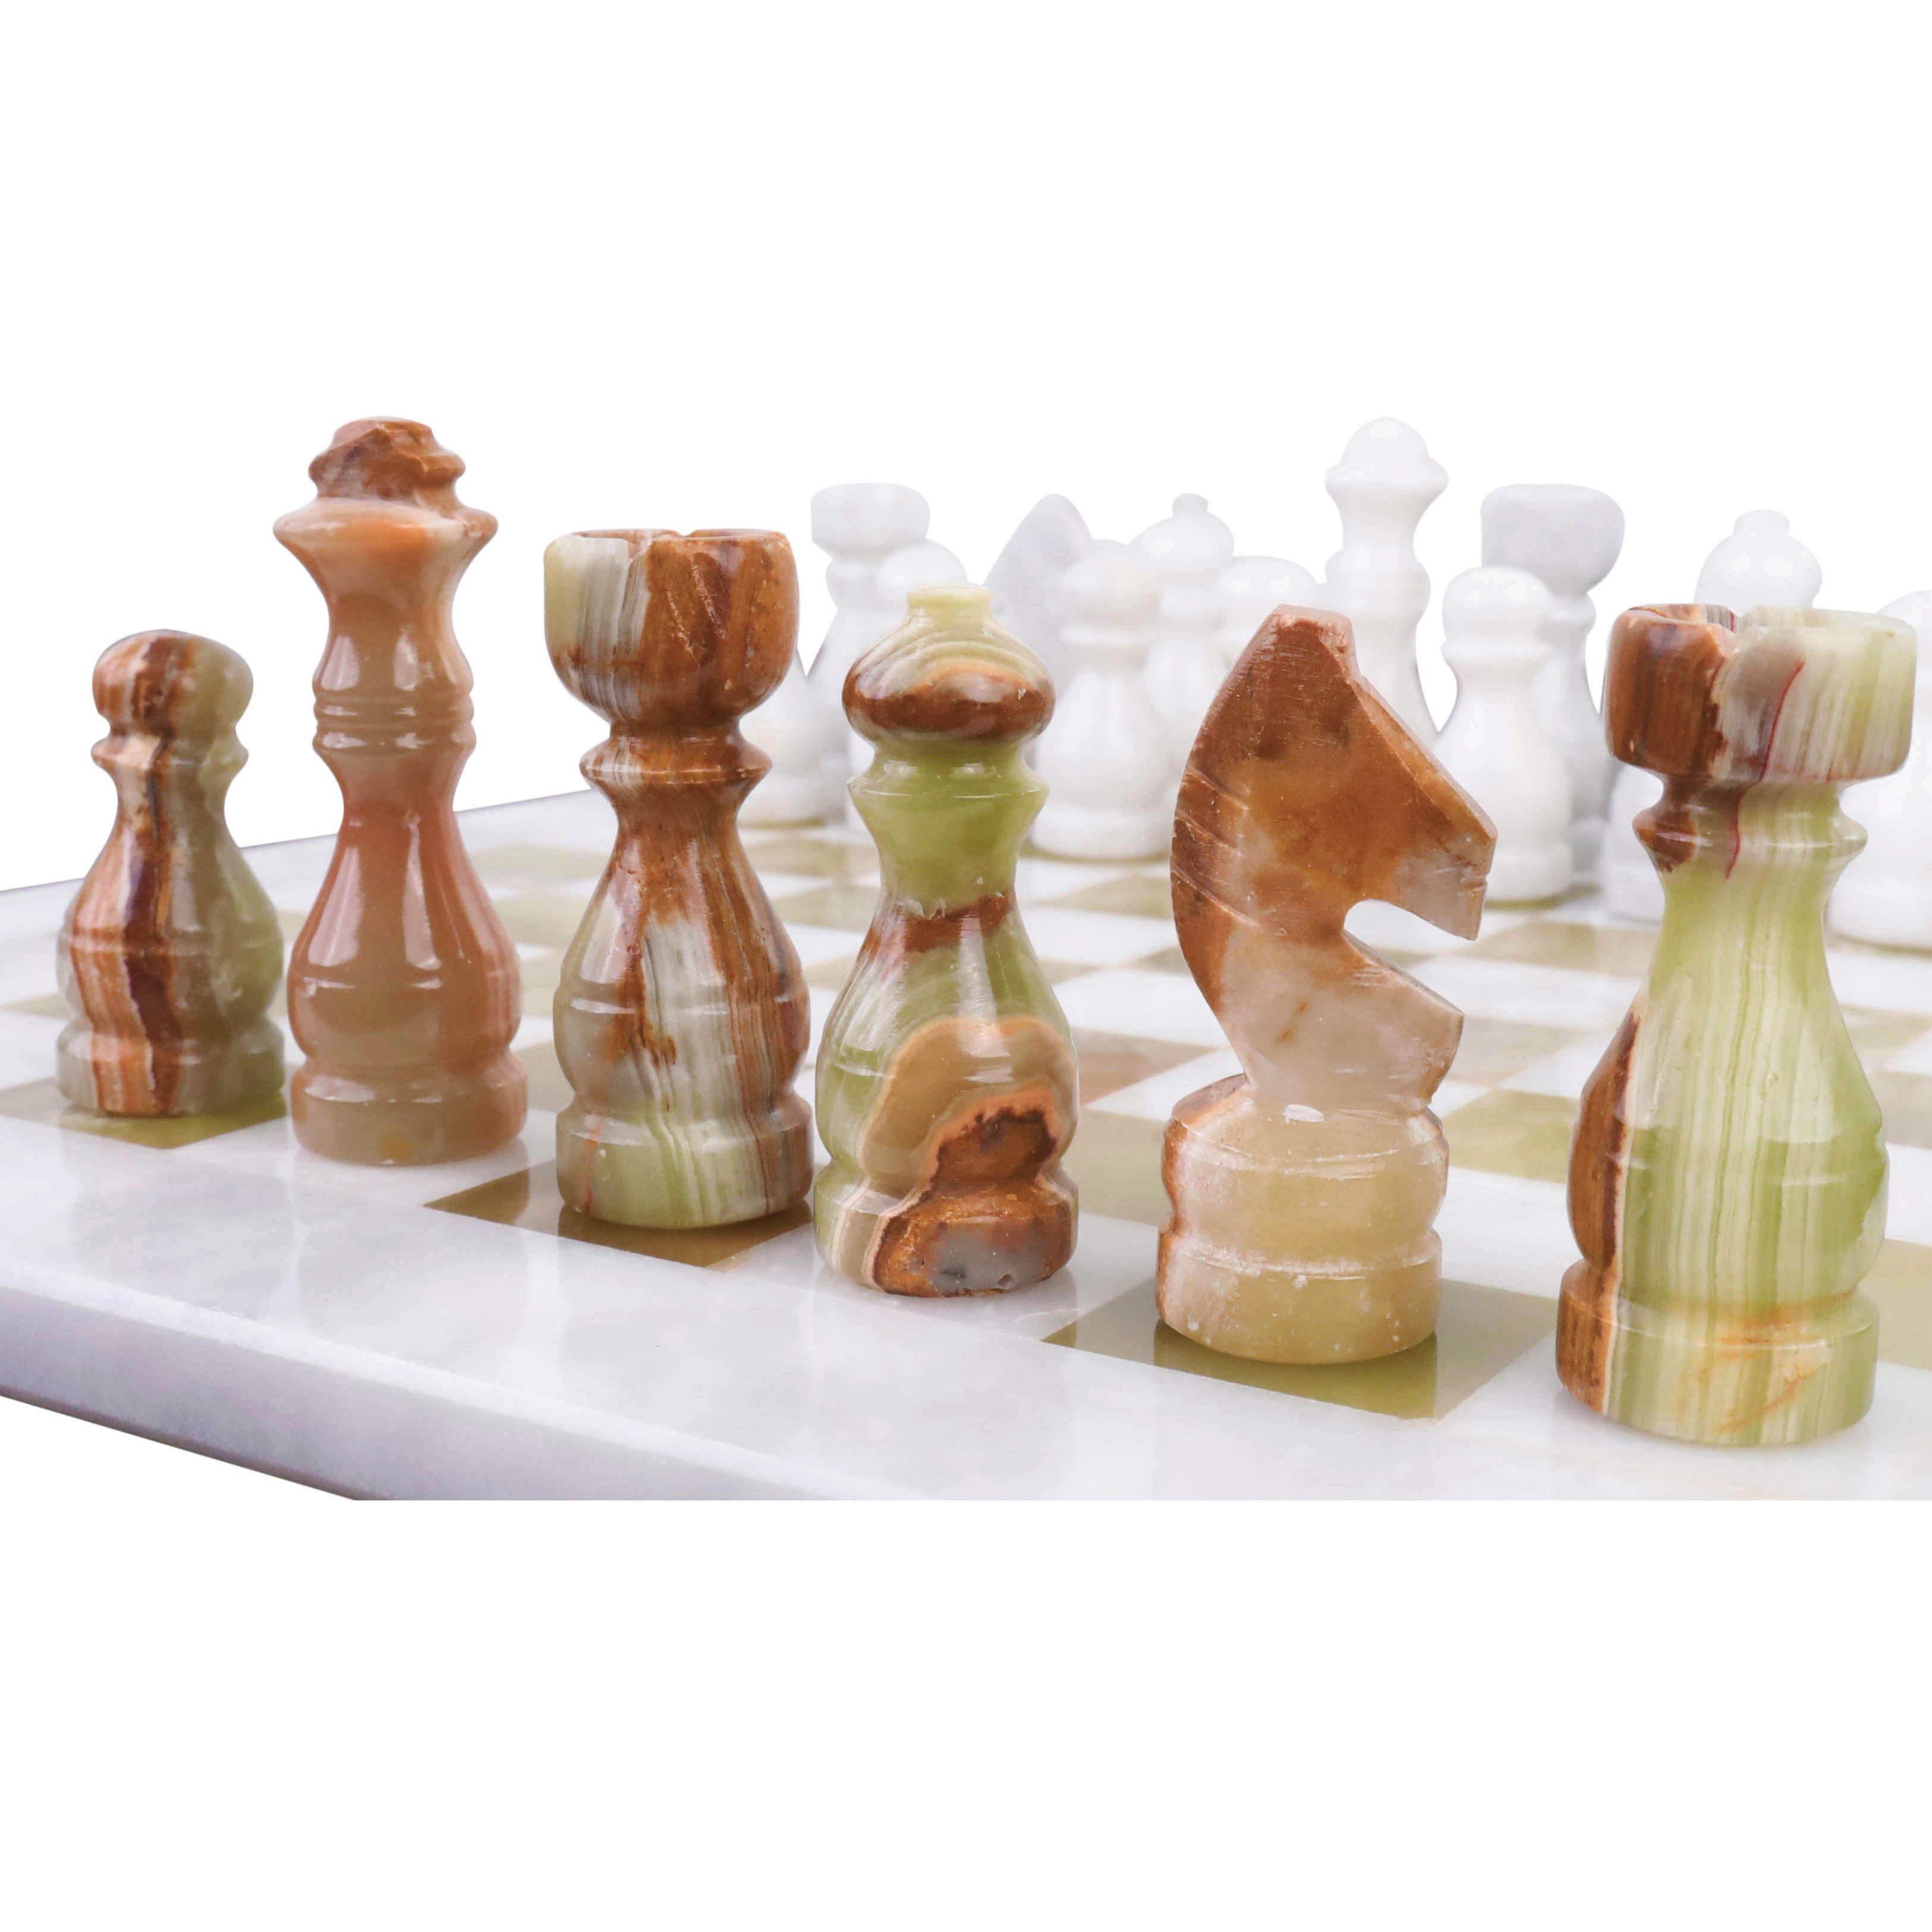 Handmade Chess Set, Onyx Chess Set